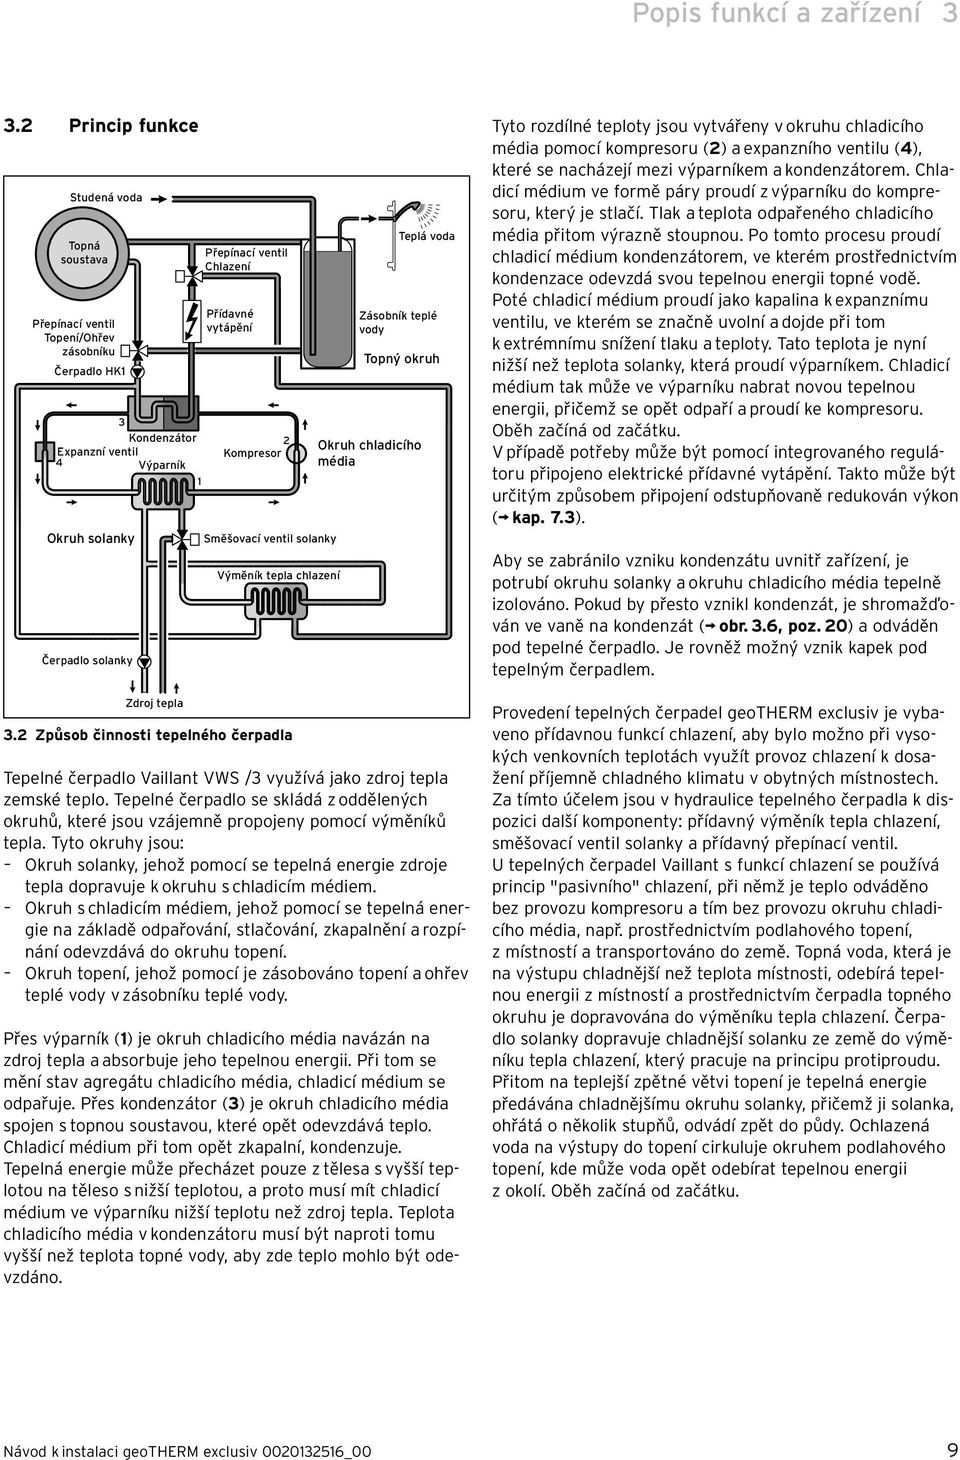 ventil Chlazení Přídavné vytápění 2 Kompresor Směšovací ventil solanky Výměník tepla chlazení 3.